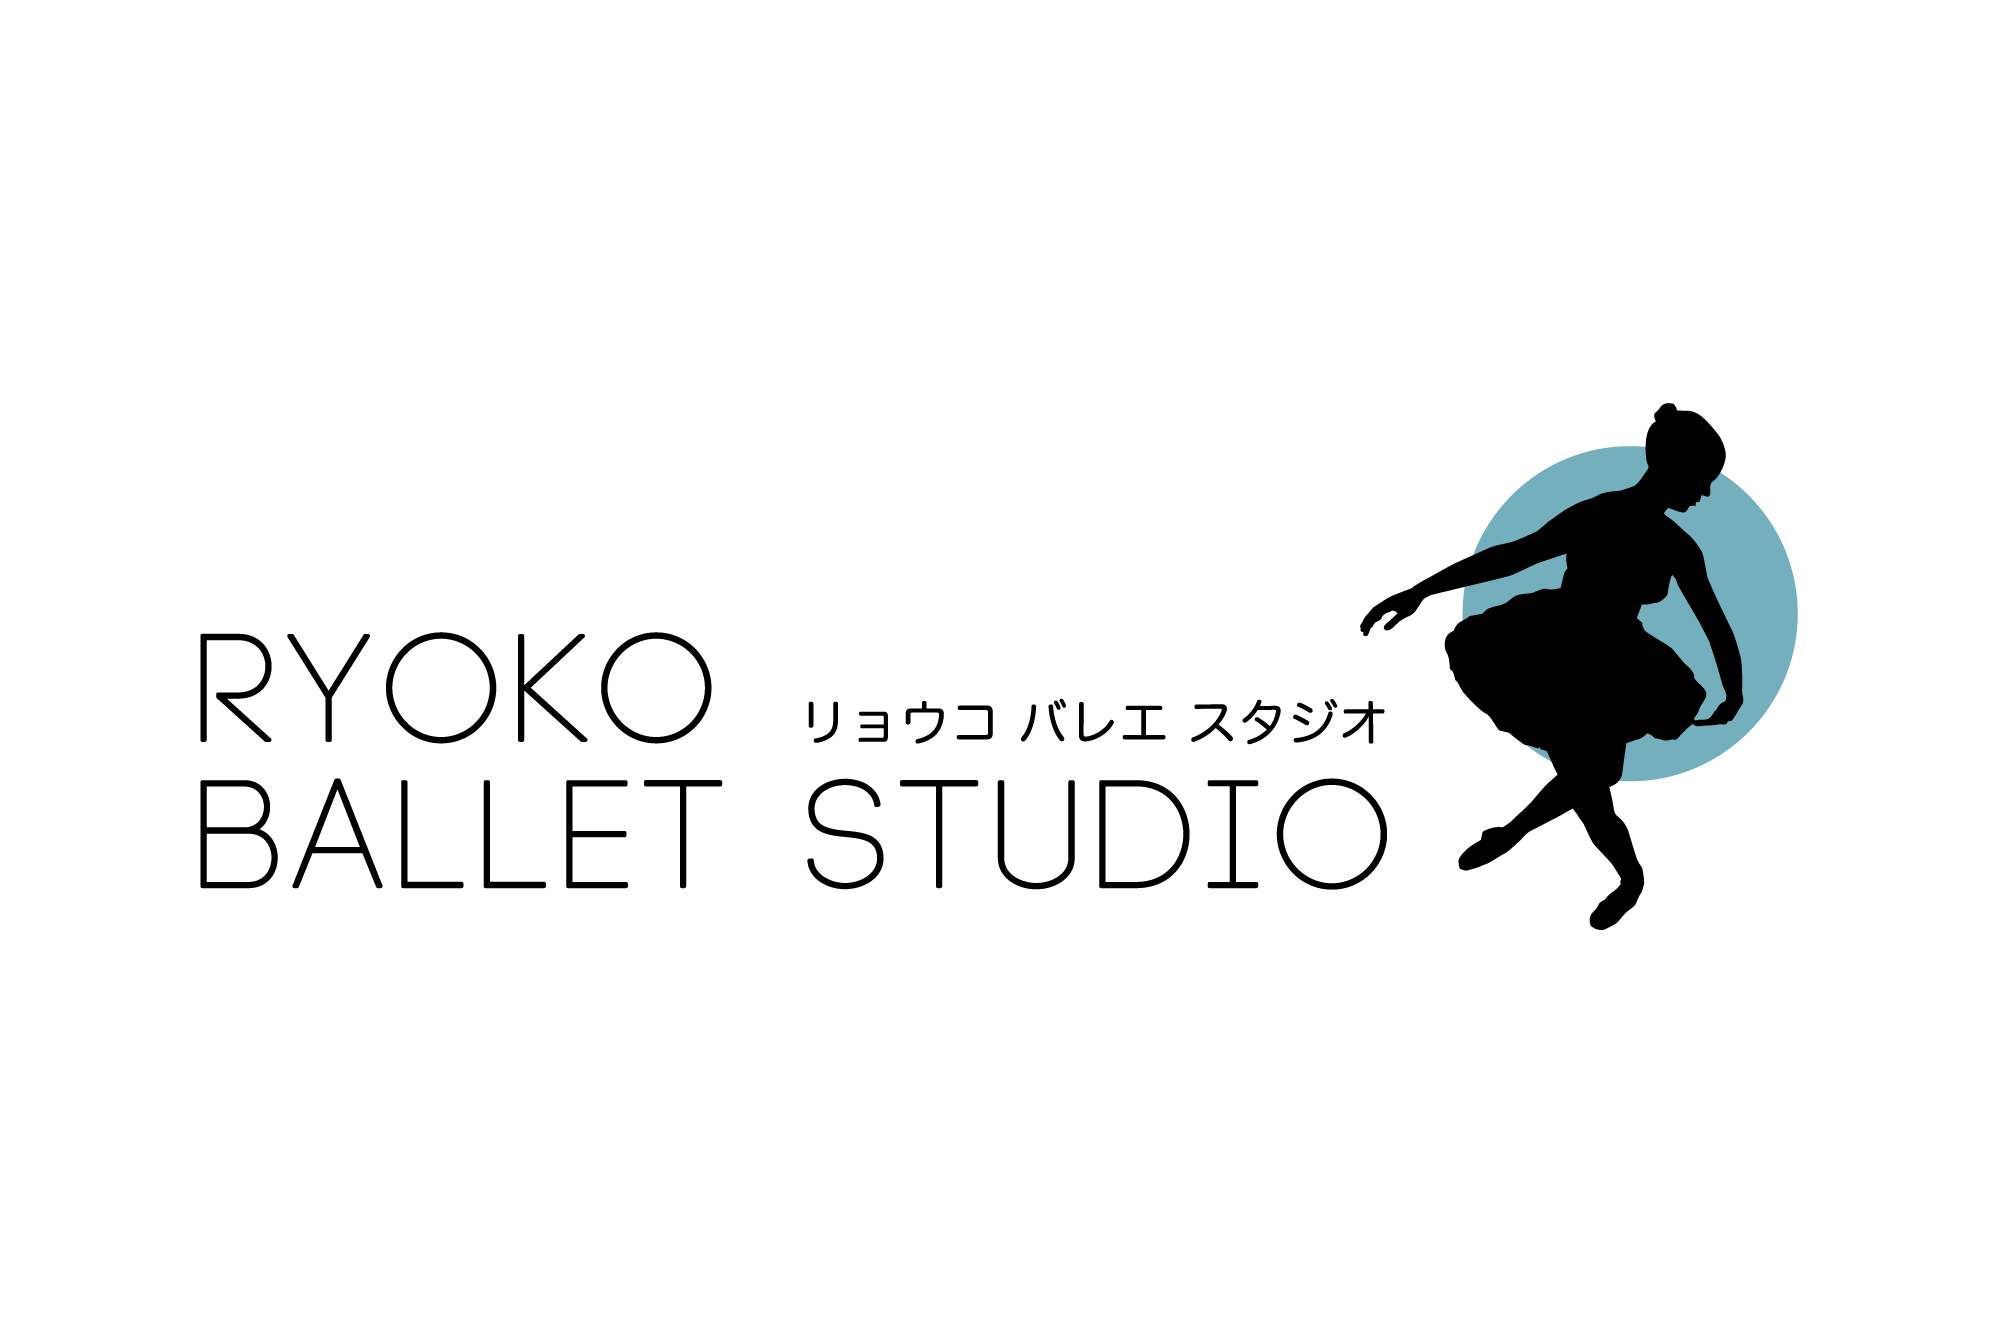 RYOKO BALLET STUDIO